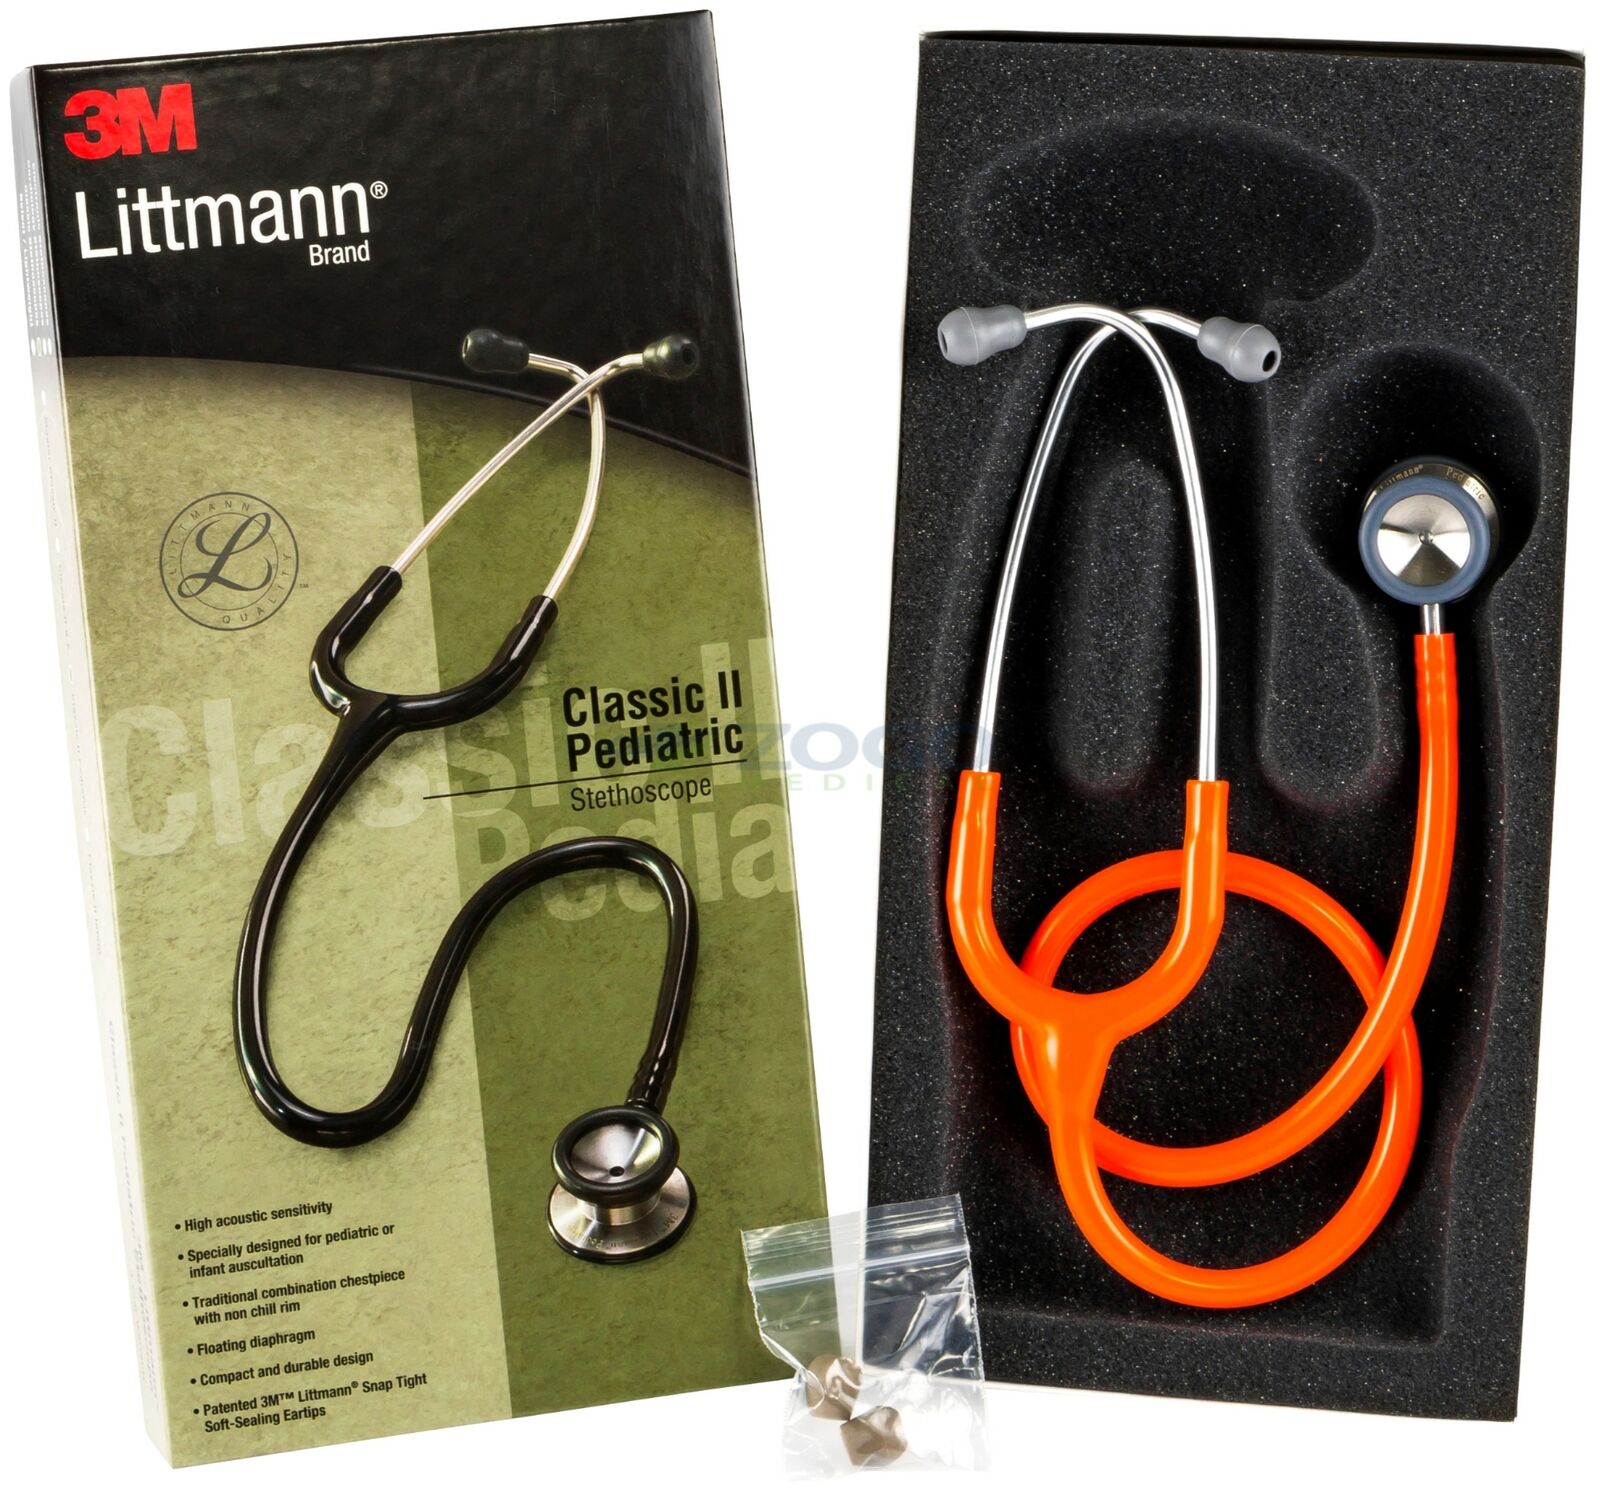 Littmann Classic II Infant Stethoscope